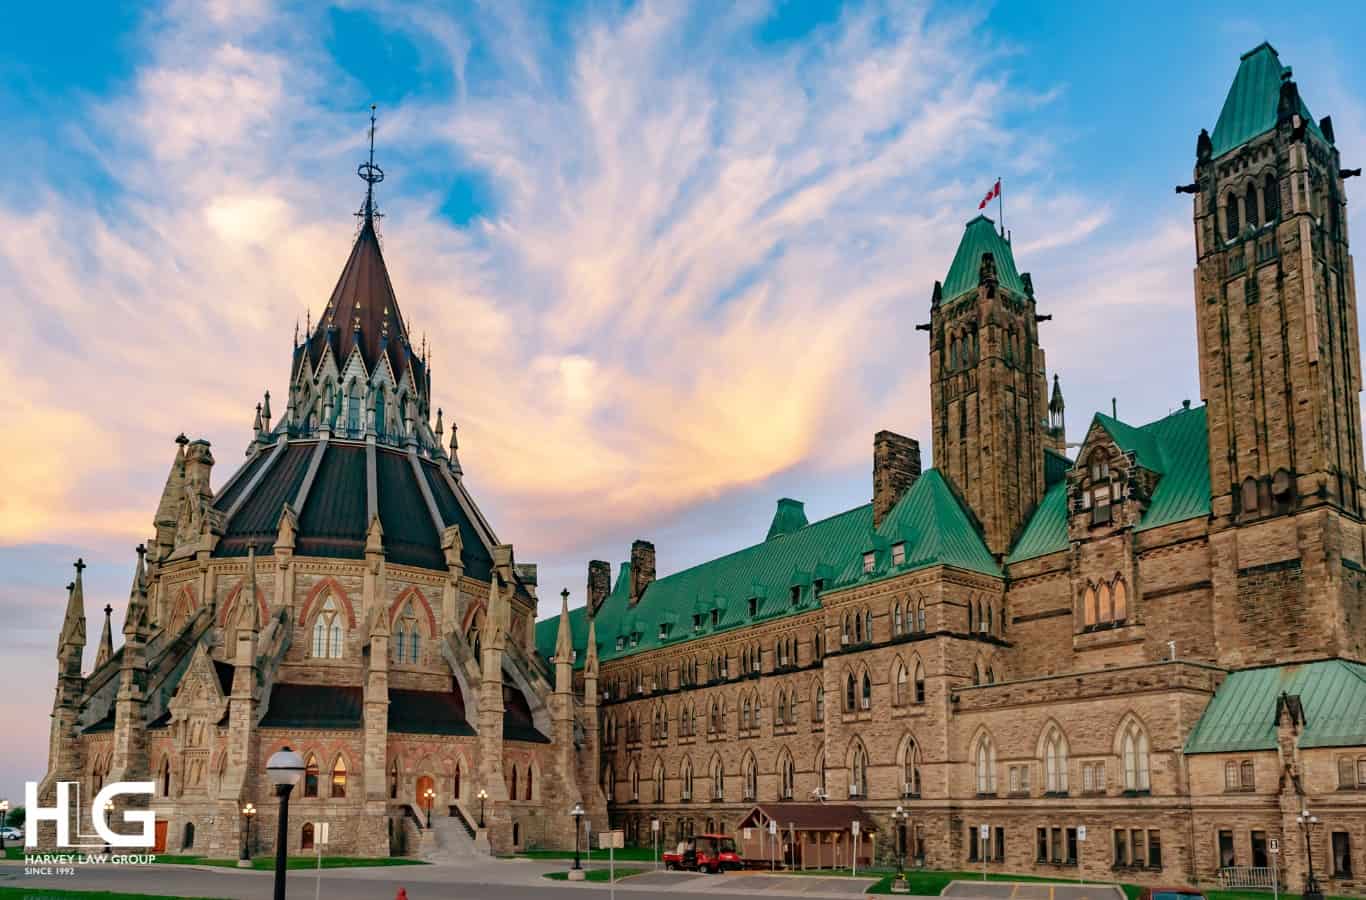  Parliament Hill là nơi diễn ra các hoạt động chính trị quan trọng của Canada